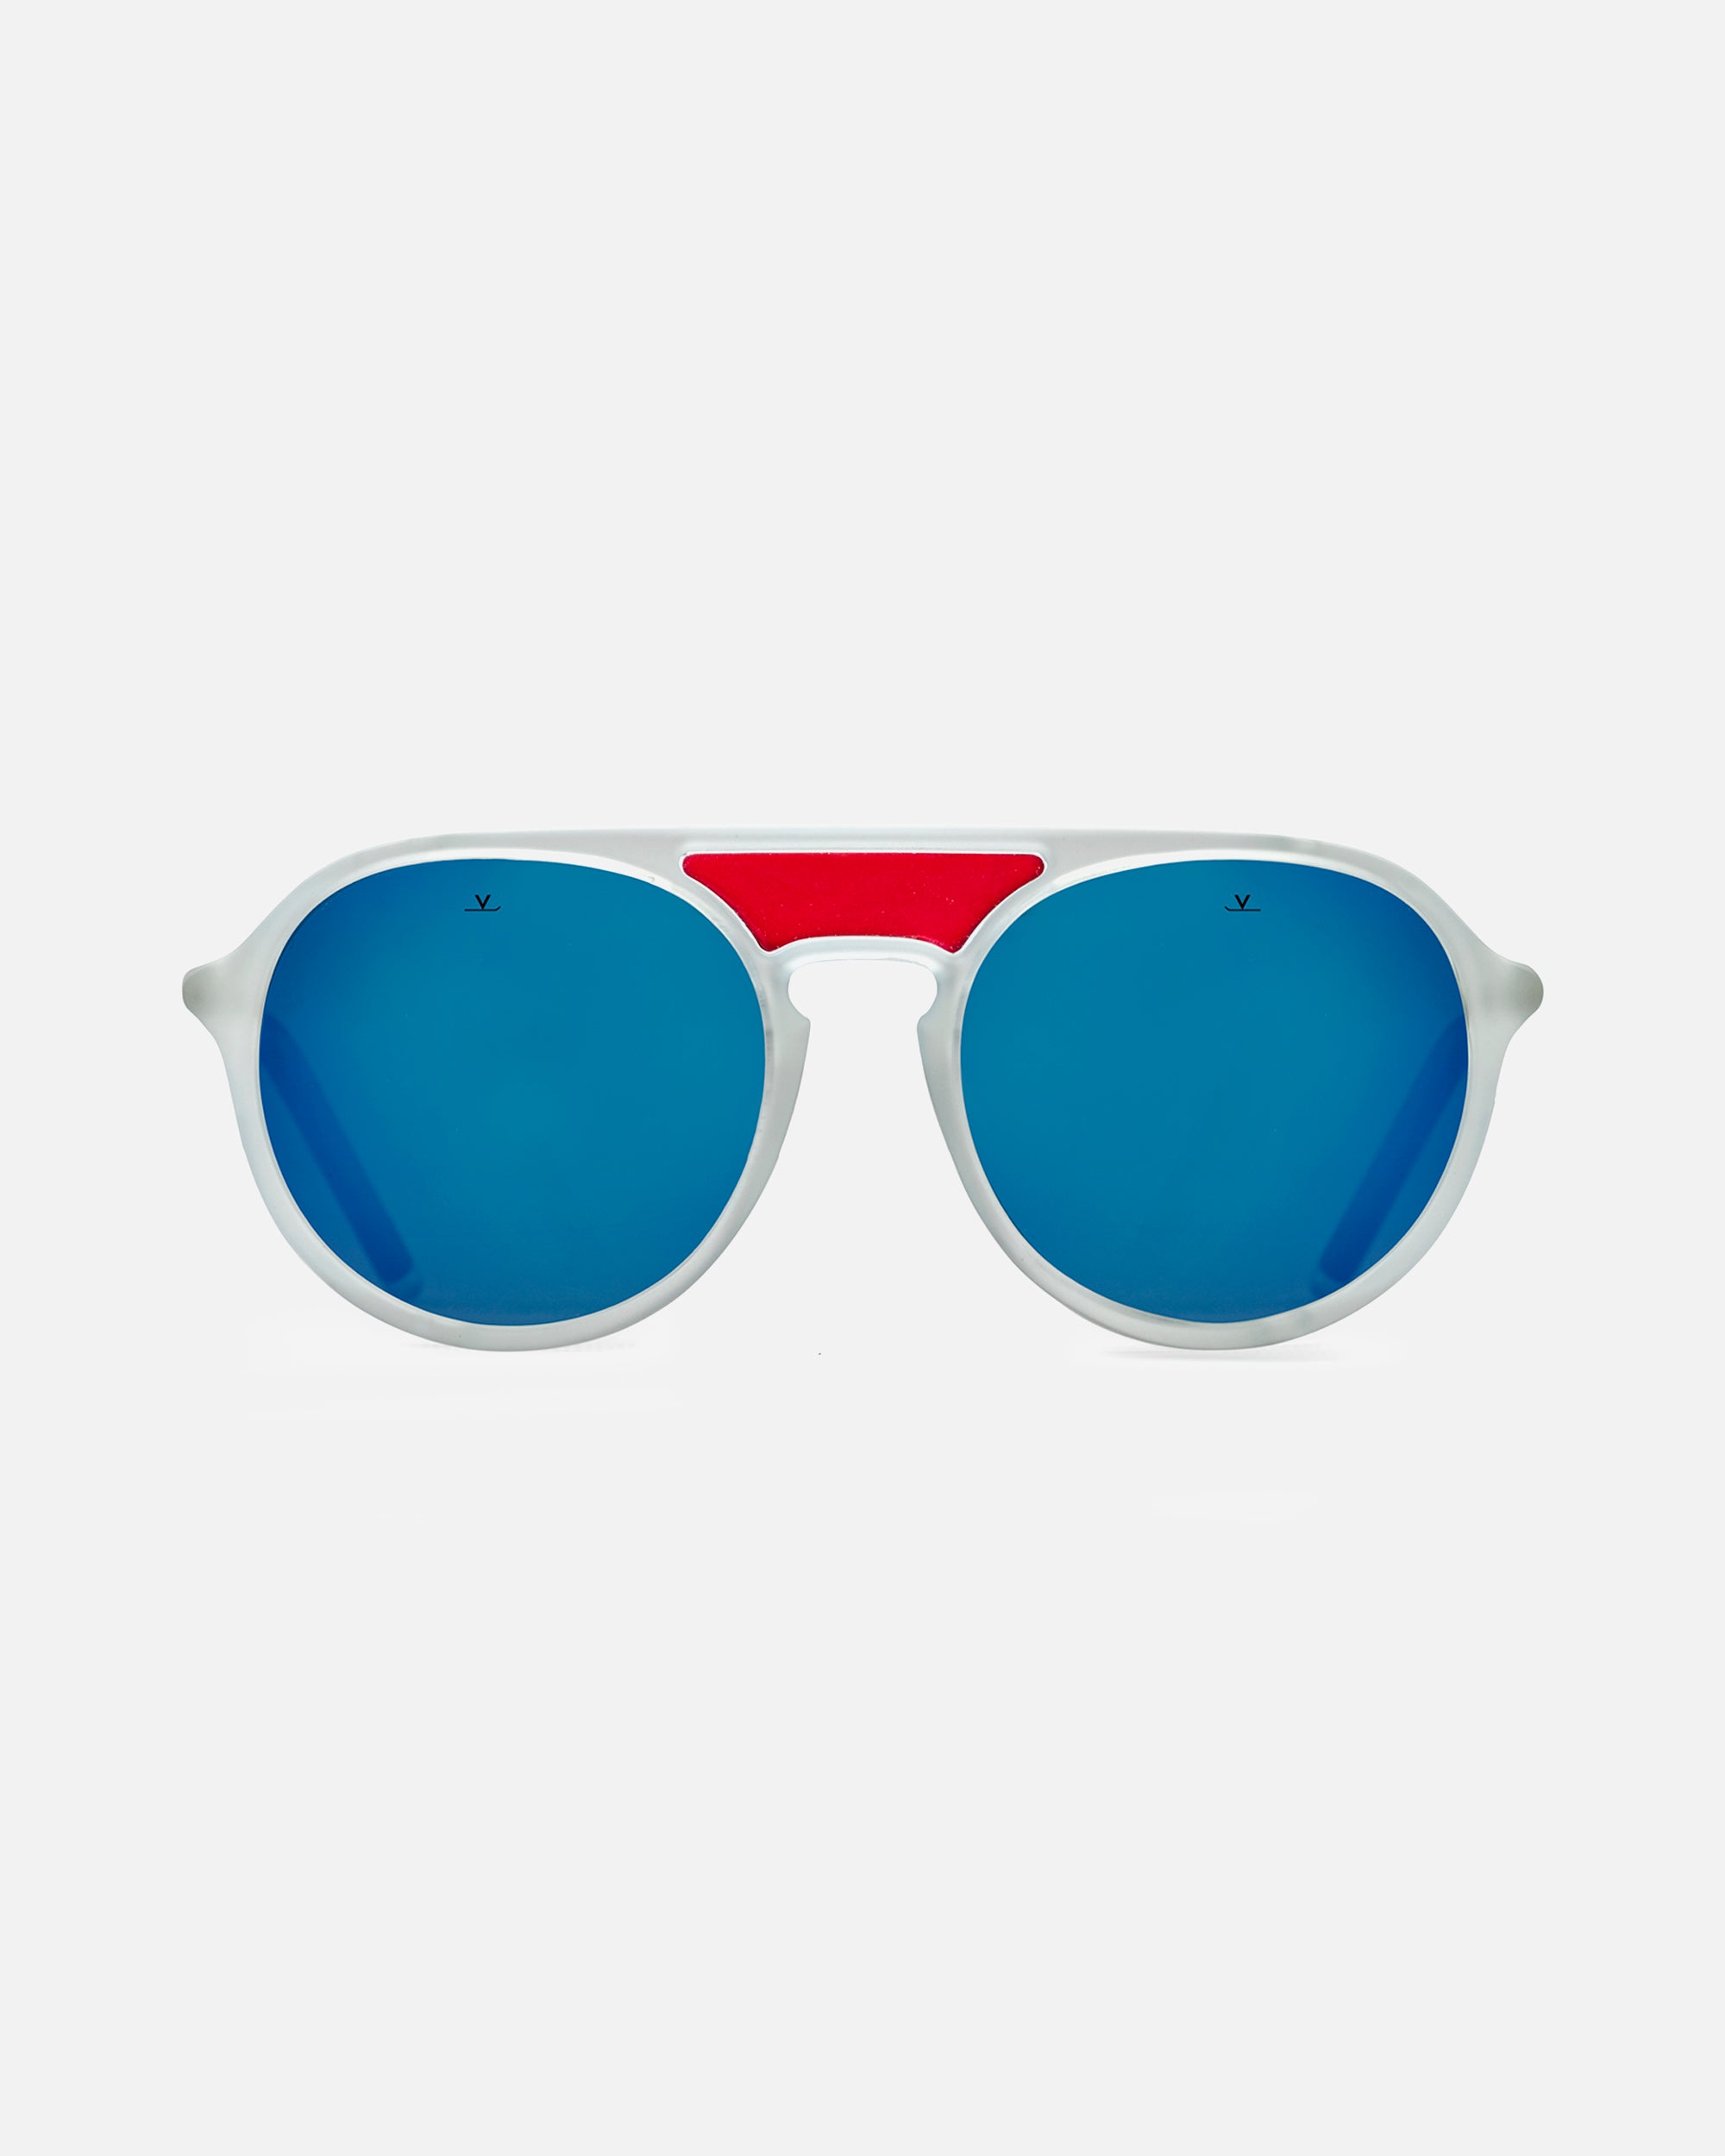 Vuarnet White / Red RACING Regular Sport Sunglasses